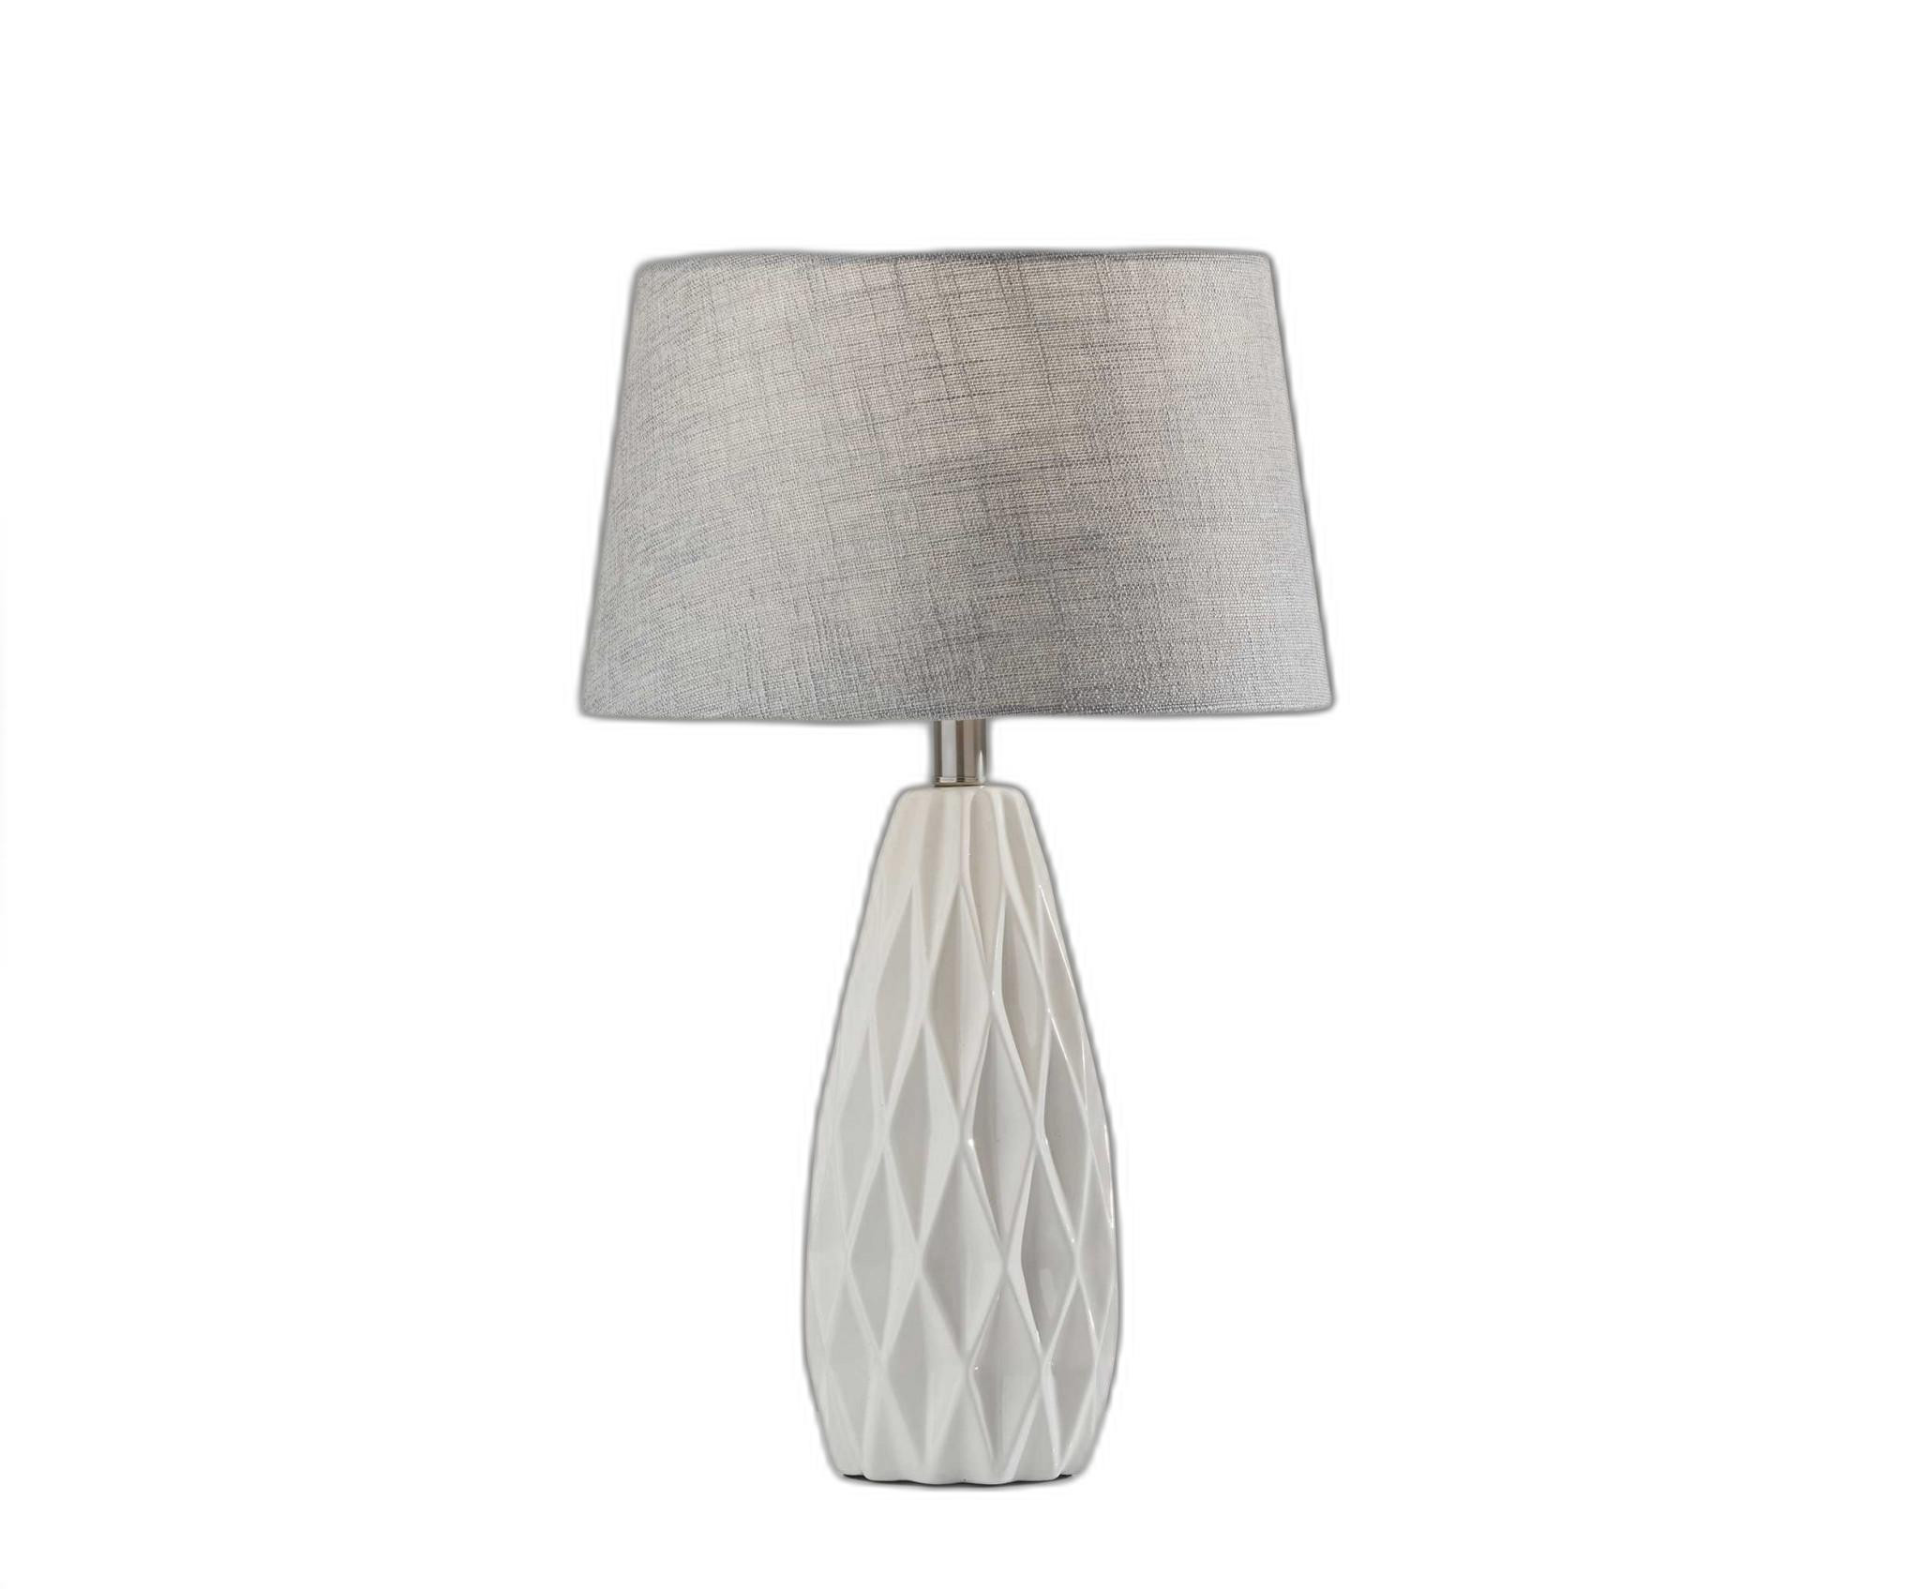 Elegant Geometric Design Ceramic Table Lamp (22.5"H)